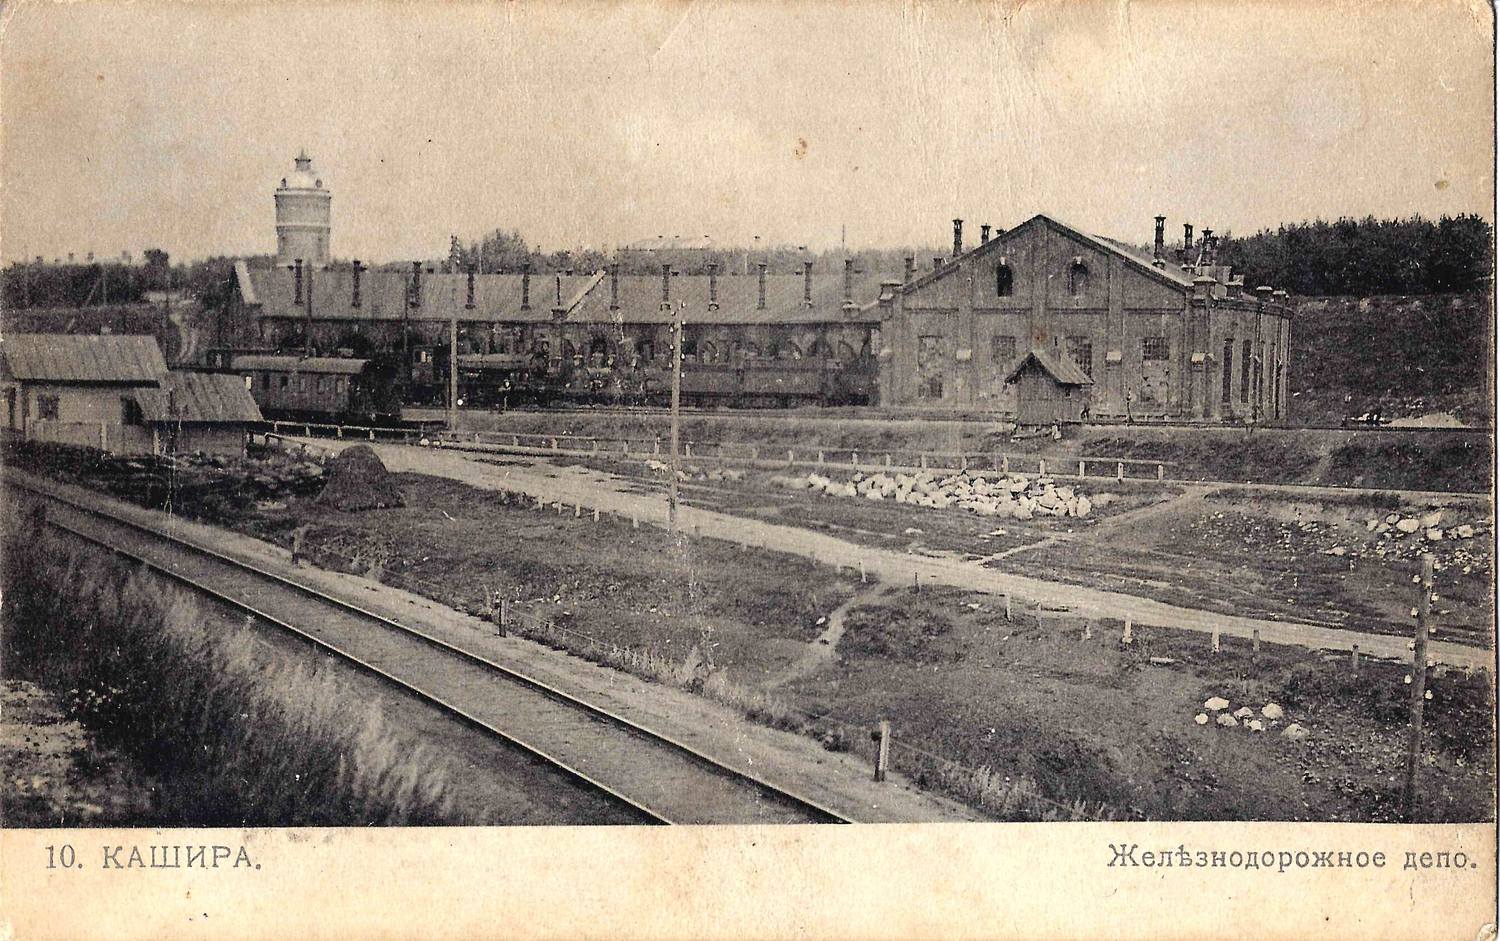 Кашира. Открытка «Железнодорожное депо». 1910-е годы. На обороте надпечатка программы спектаклей от 2 февраля 1912 года.